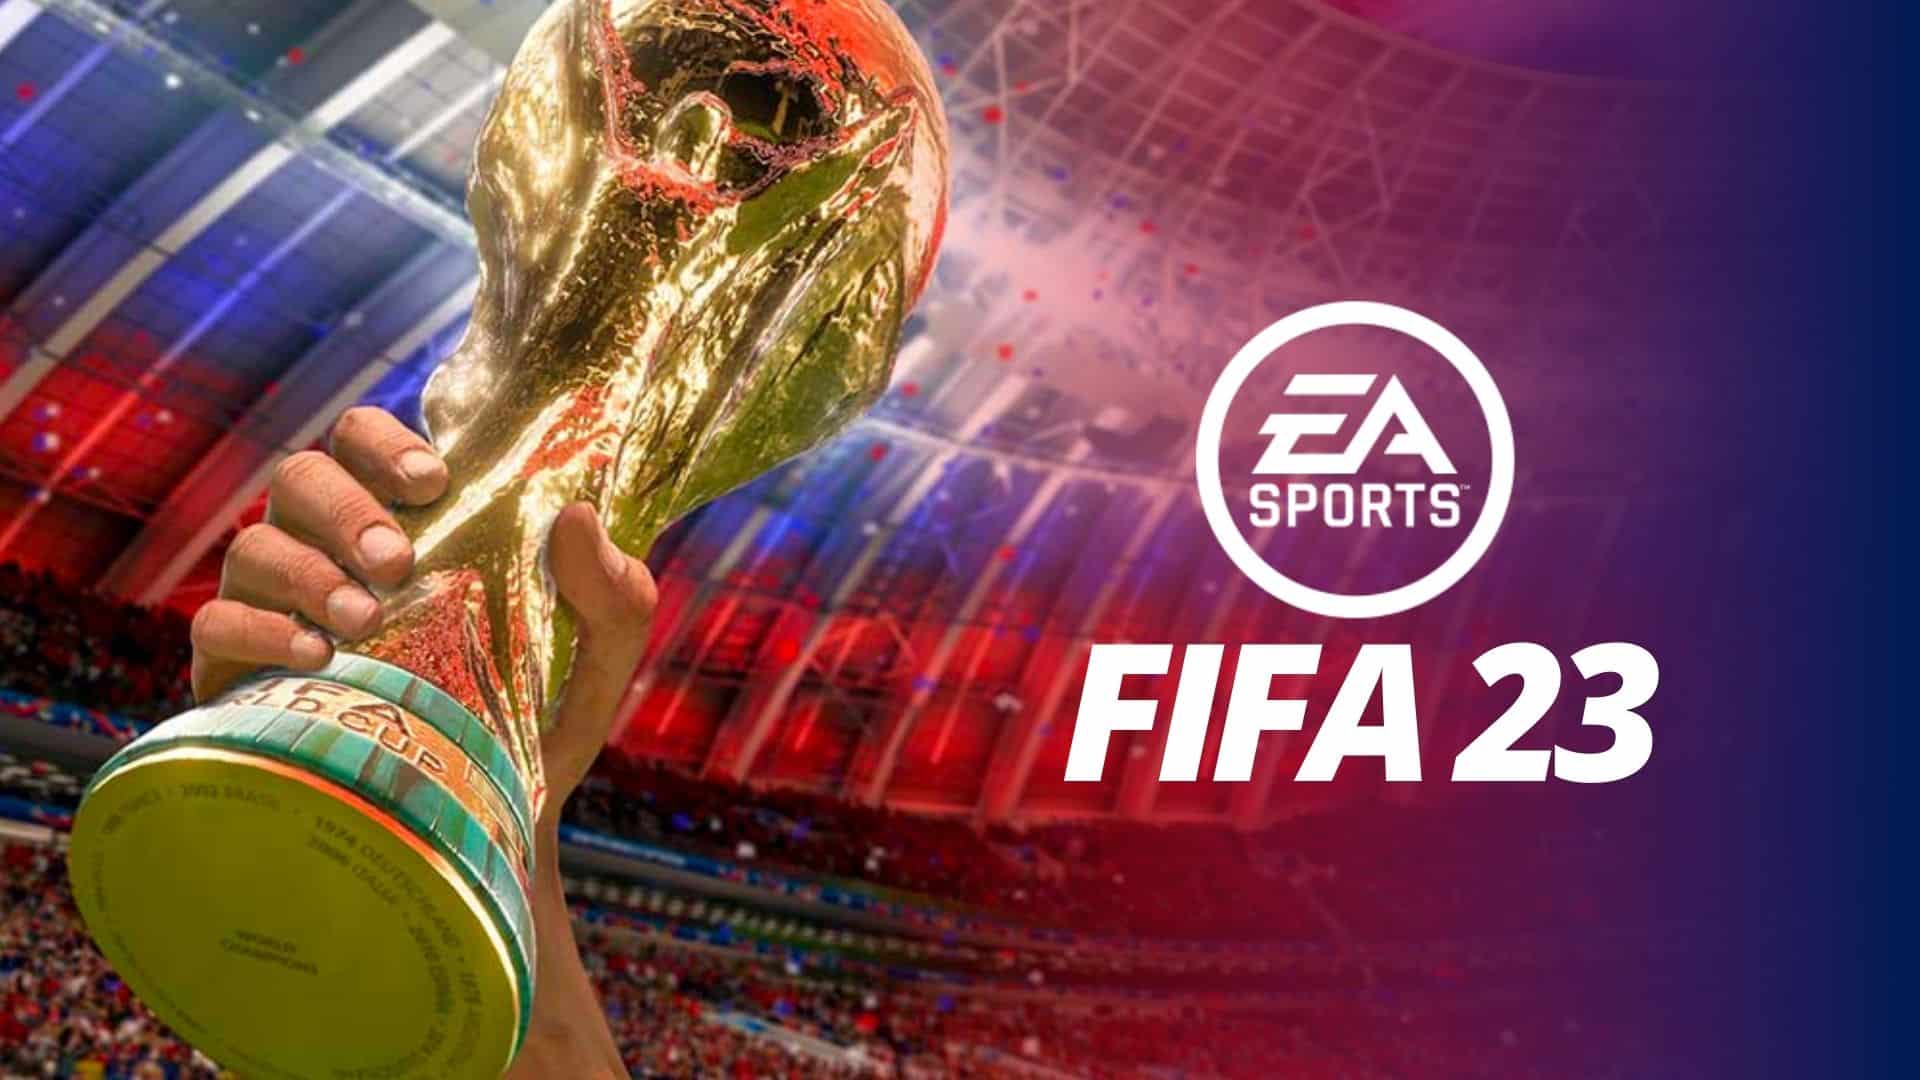 FIFA 23 anticipó que contará con más de 105 campos de fútbol disponibles